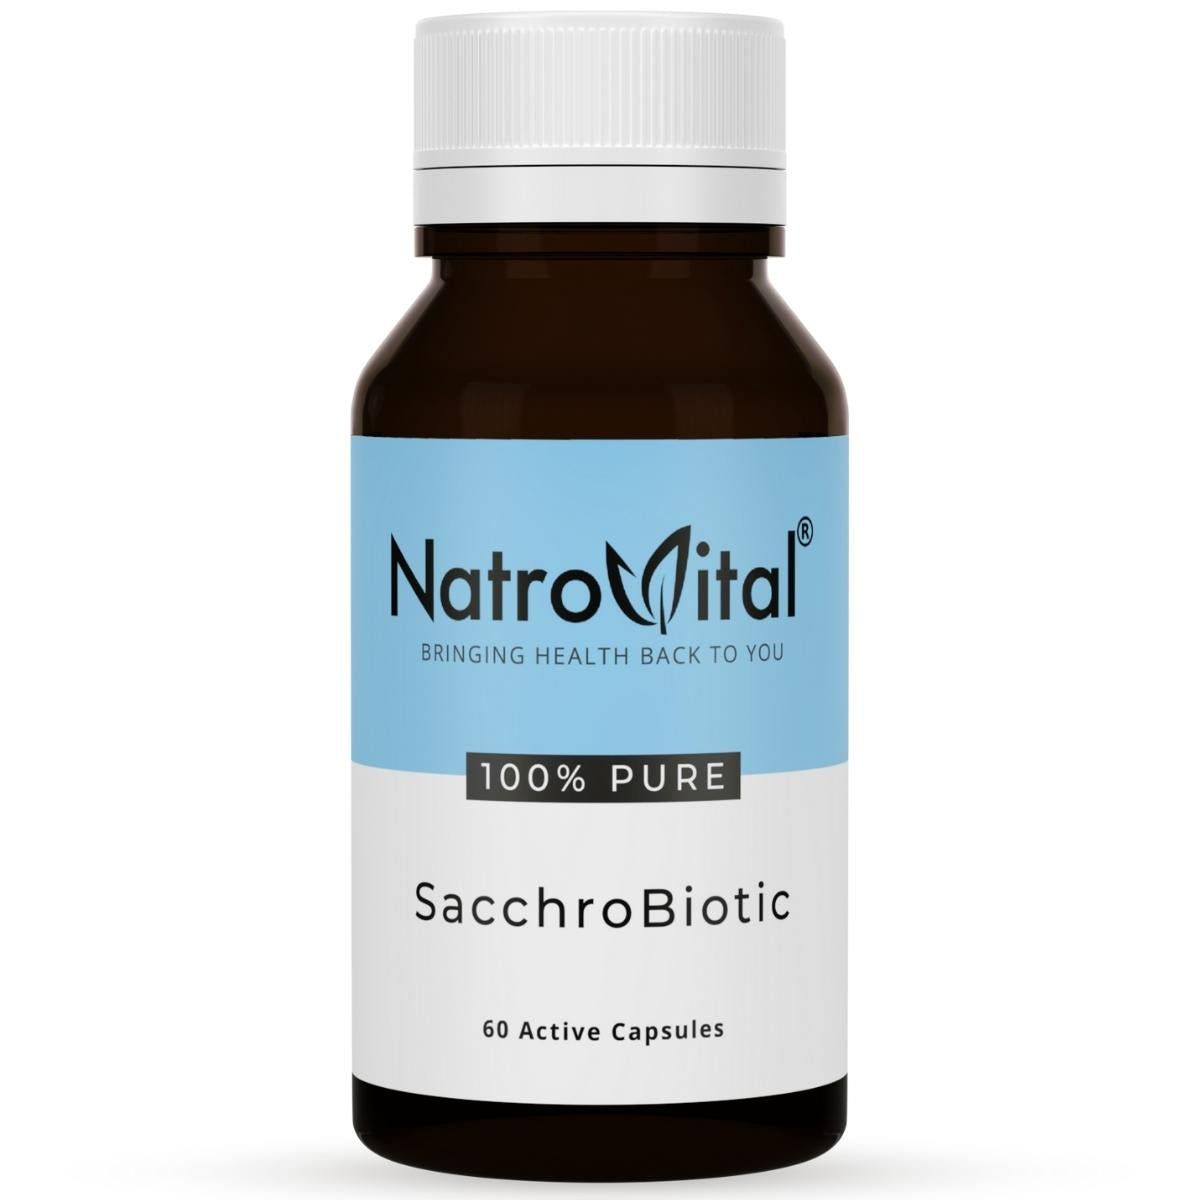 NatroVital SacchroBiotic